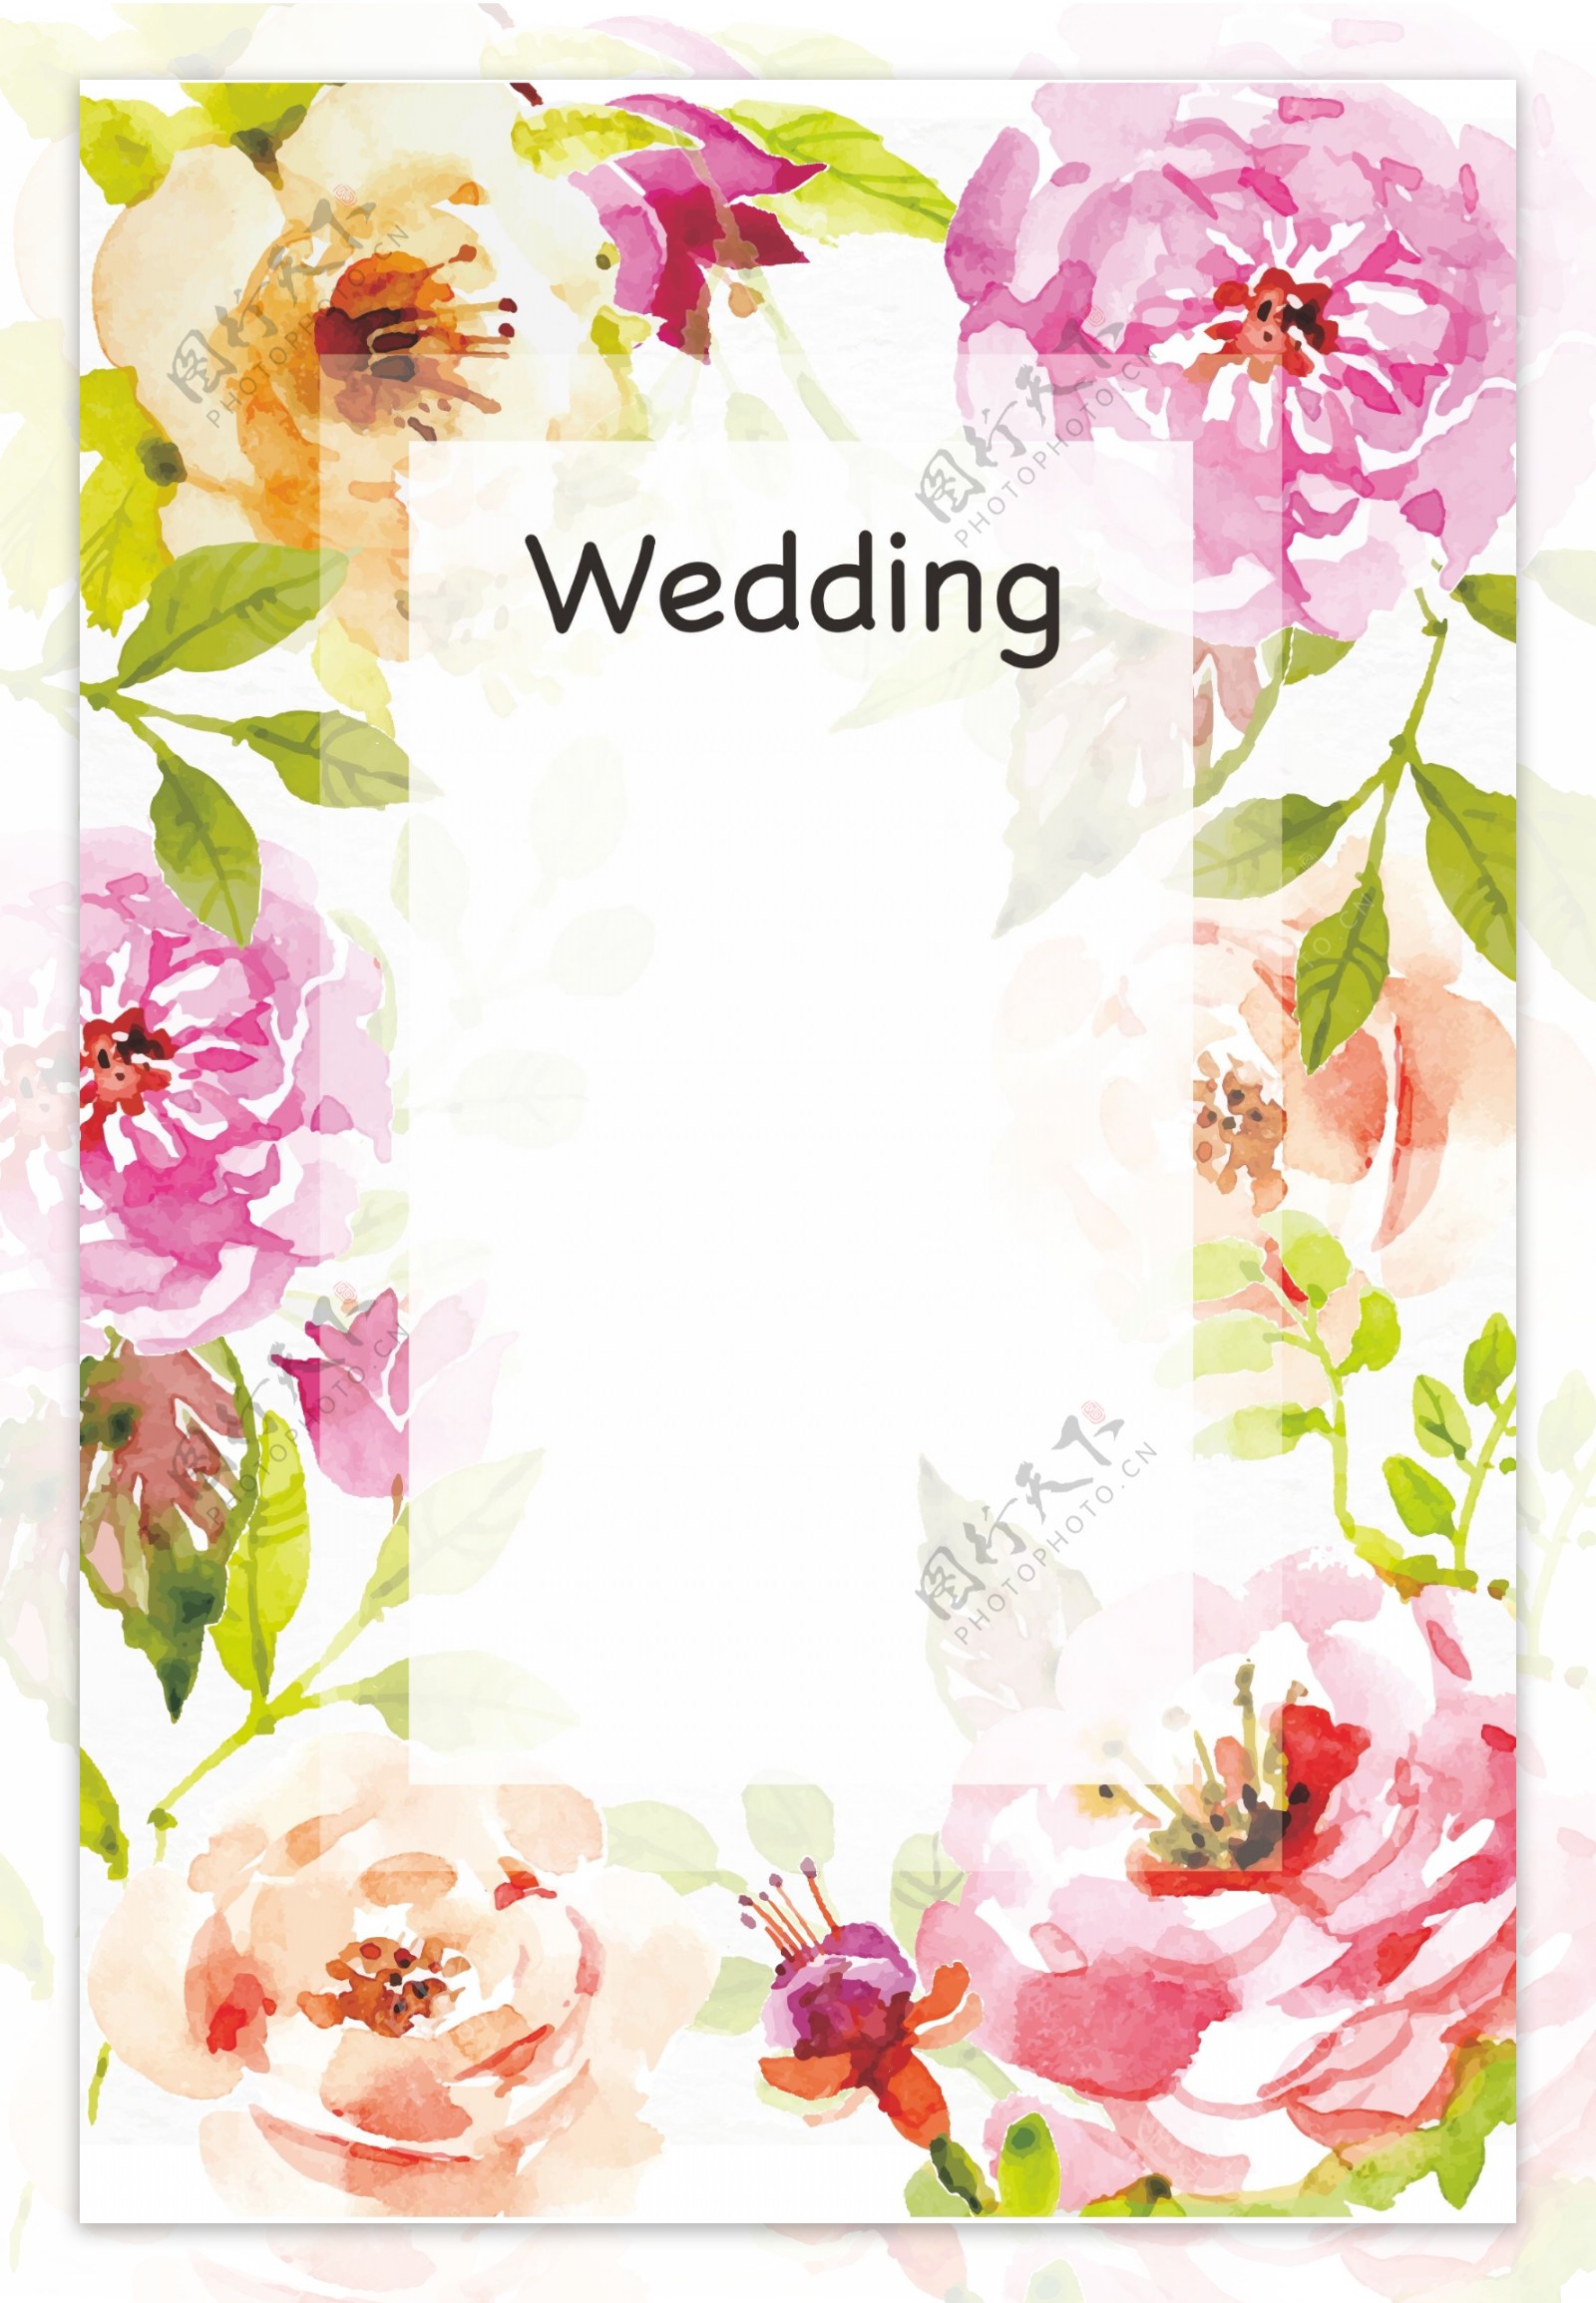 婚礼花卉祝福海报背景素材